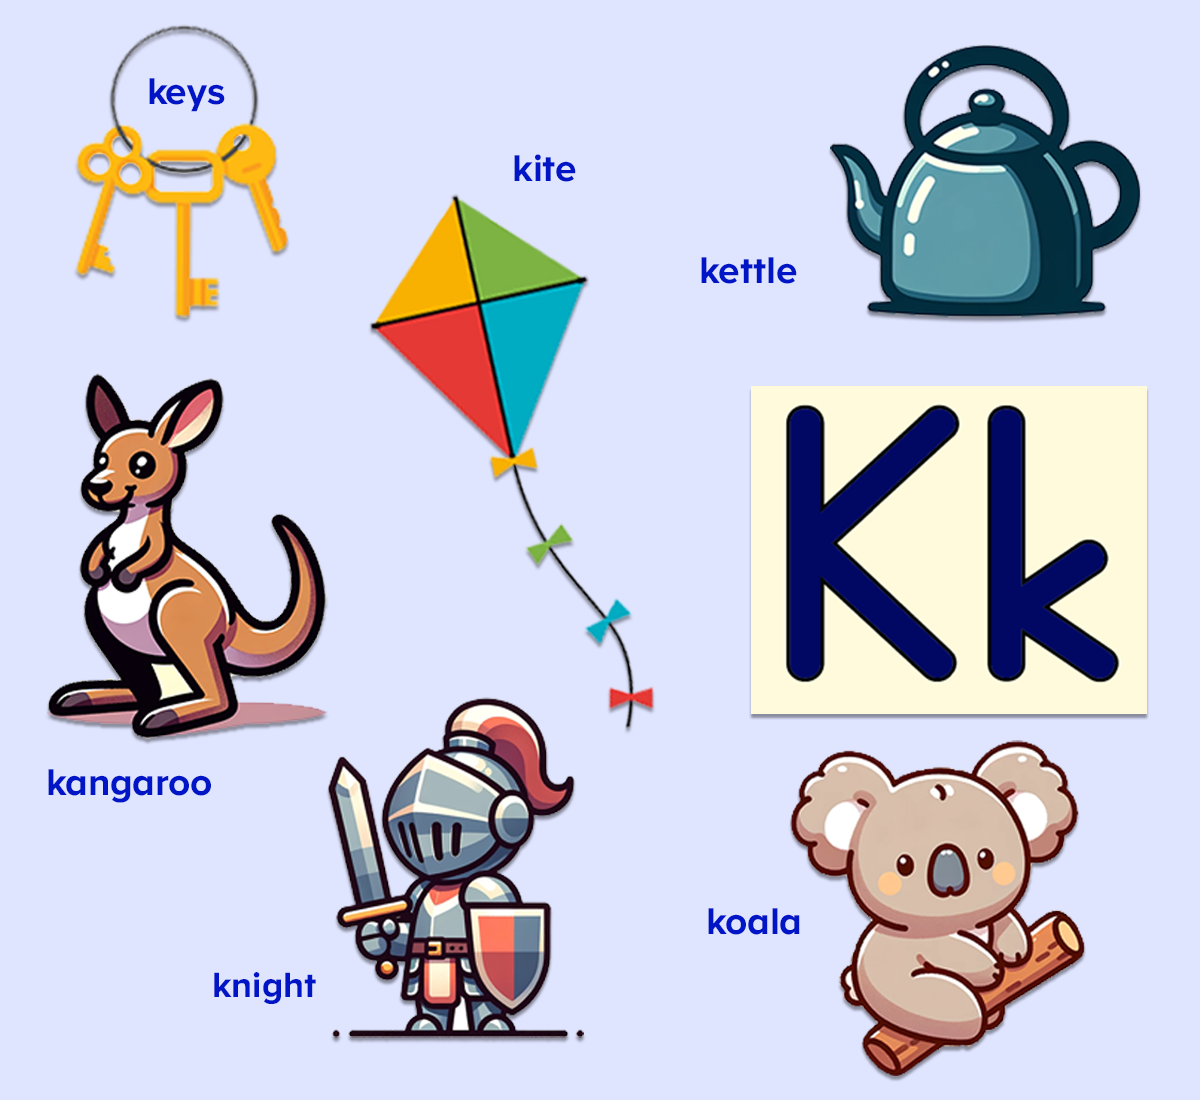 Letter K words for kids. Kangaroo, knight, koala, kettle, kite, keys. 